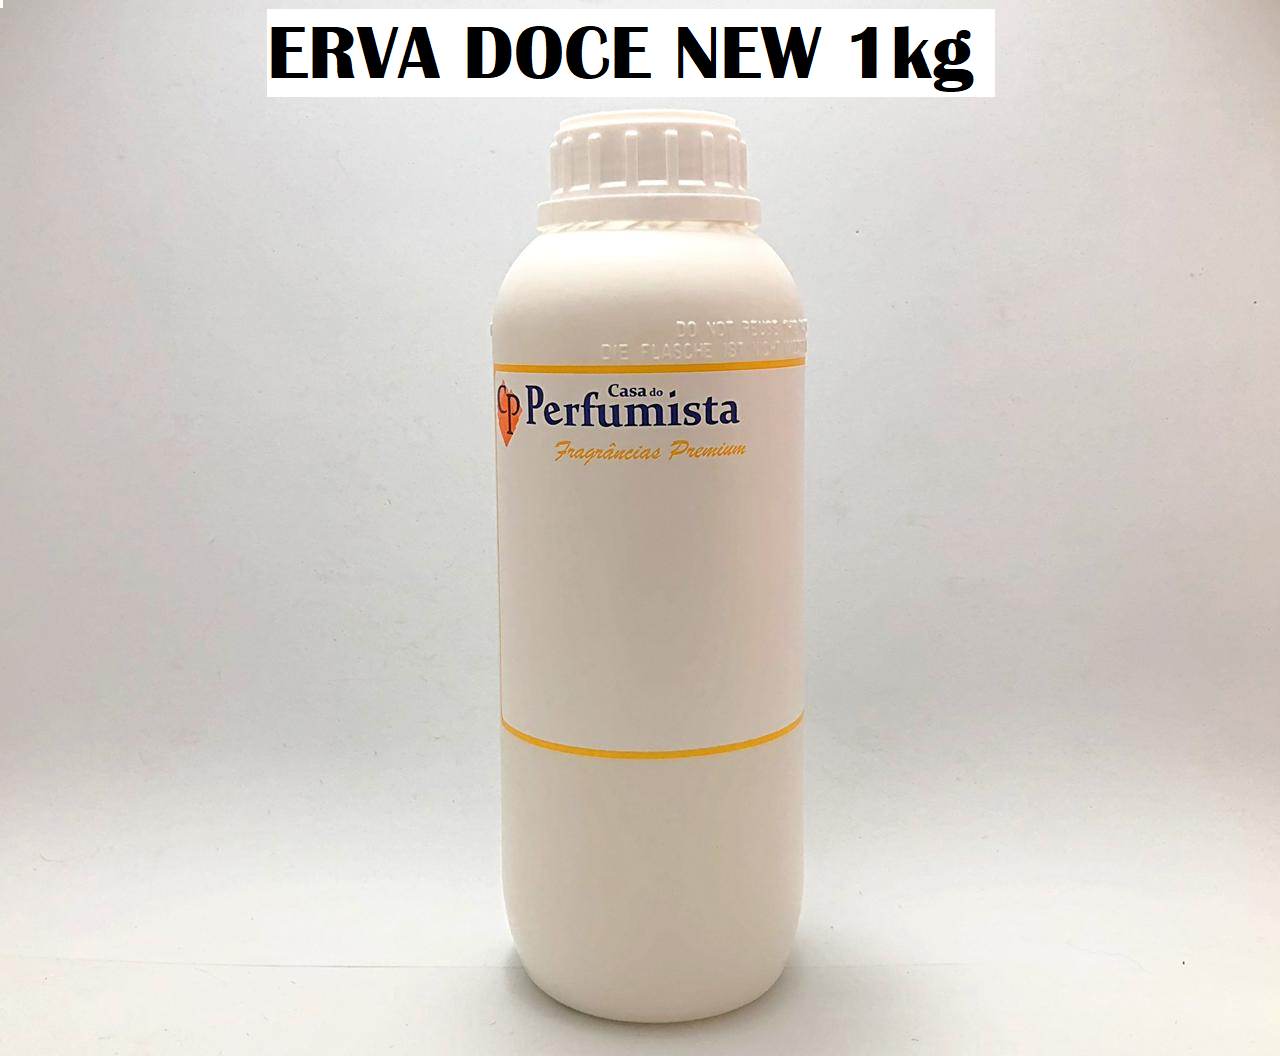 ERVA DOCE NEW - 1kg